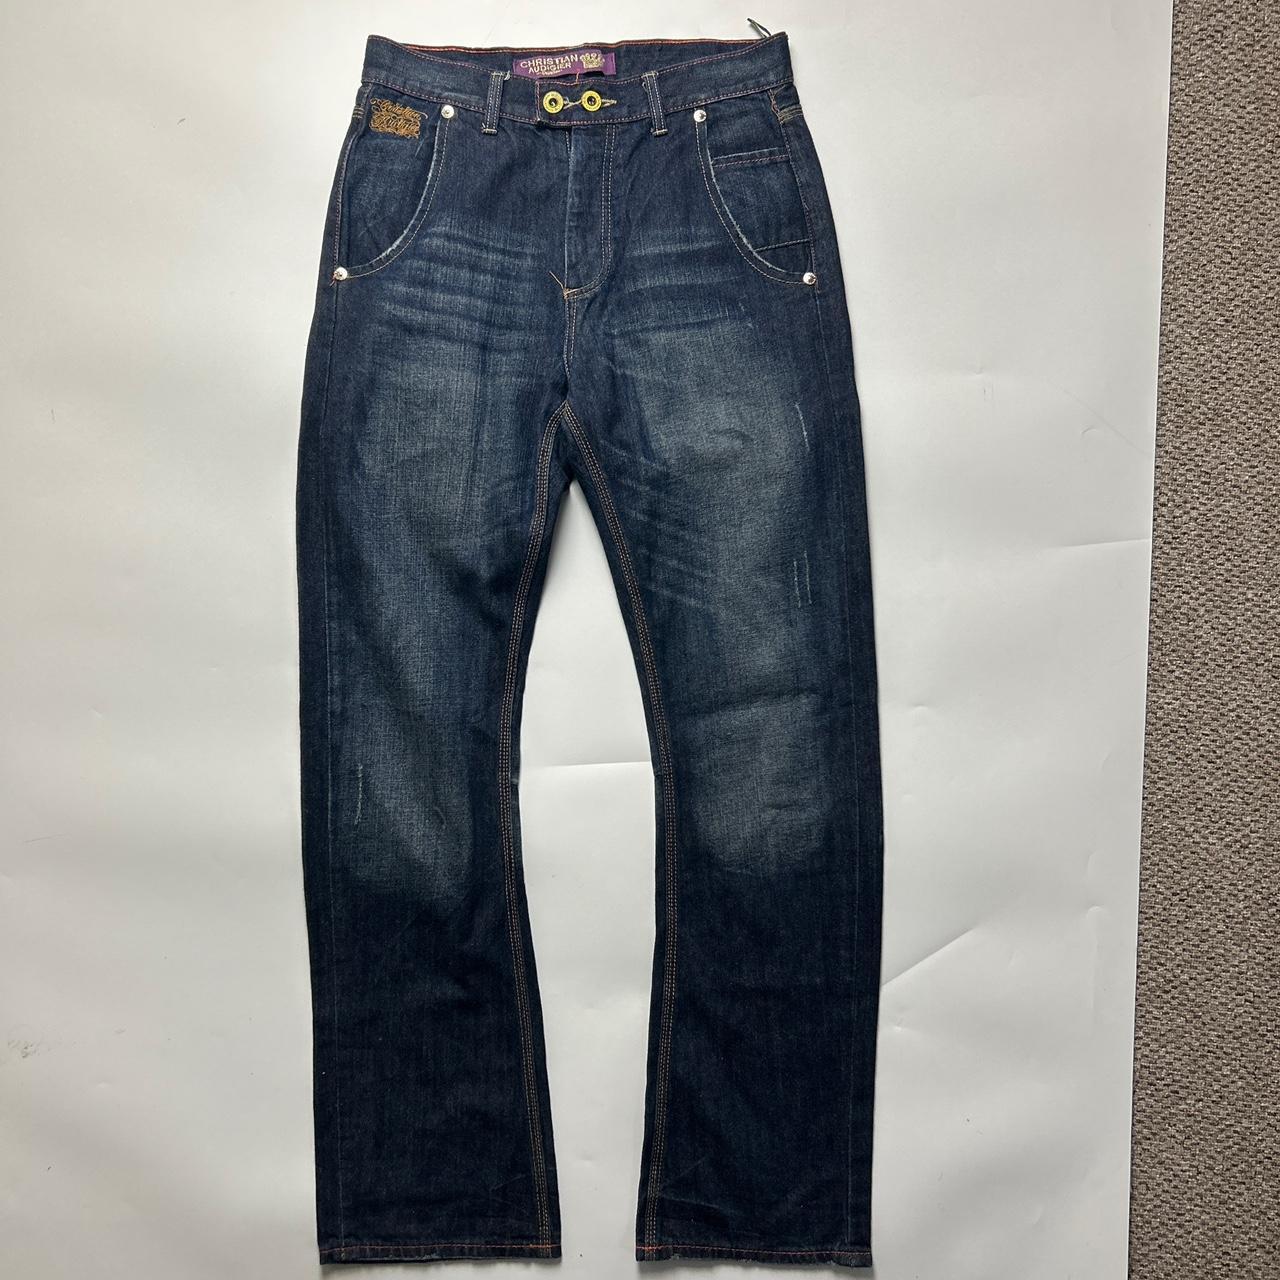 Christian Audigier Jeans (30")